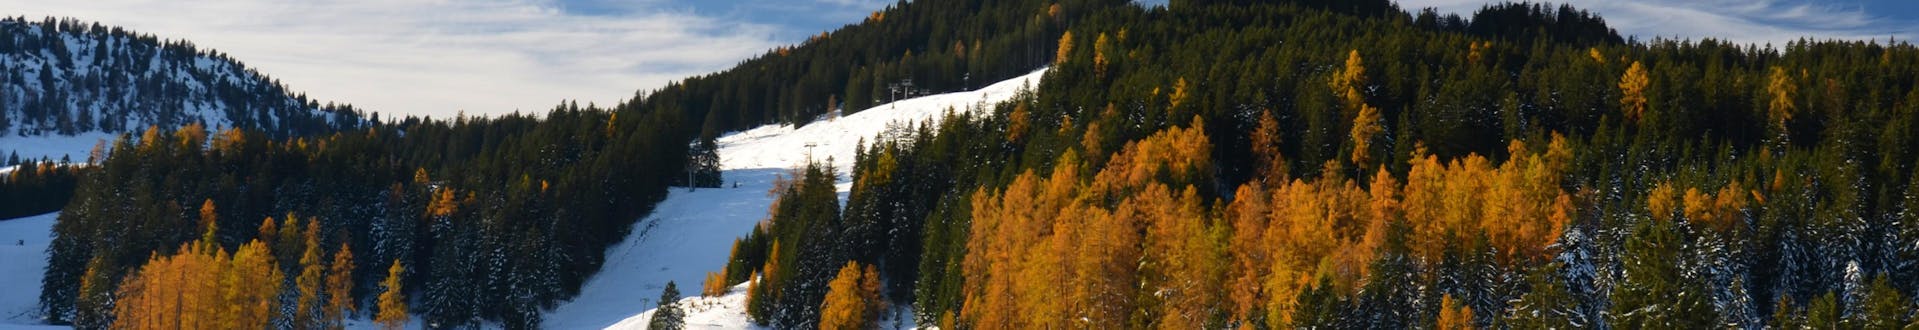 Le piste da sci del comprensorio sciistico Brand - Brandnertal, dove è possibile prenotare lezioni di sci online.